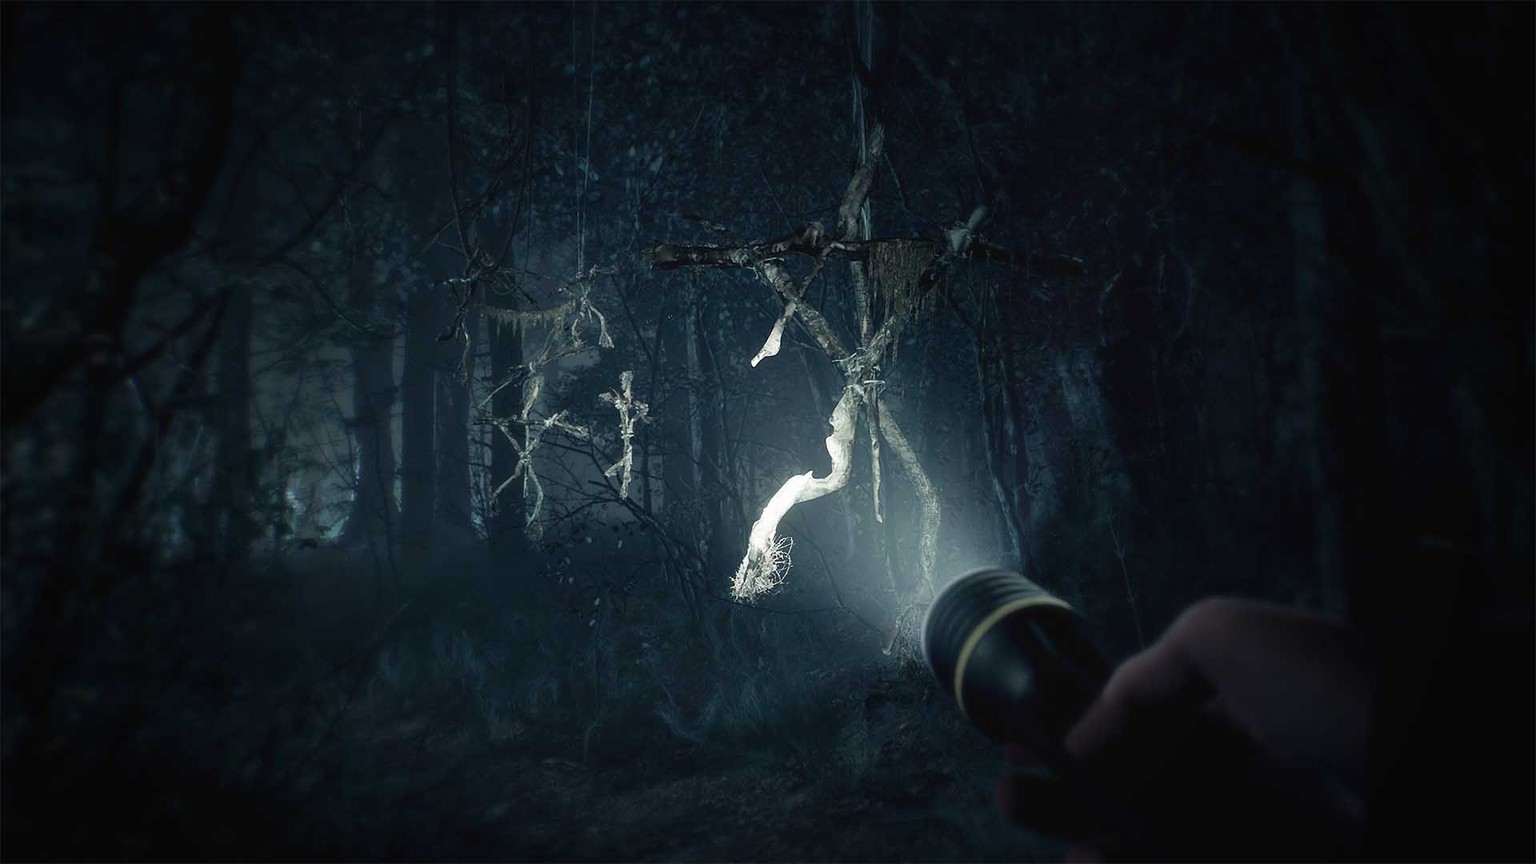 Die Taschenlampe ist oft die einzige Lichtquelle im dunklen Wald.